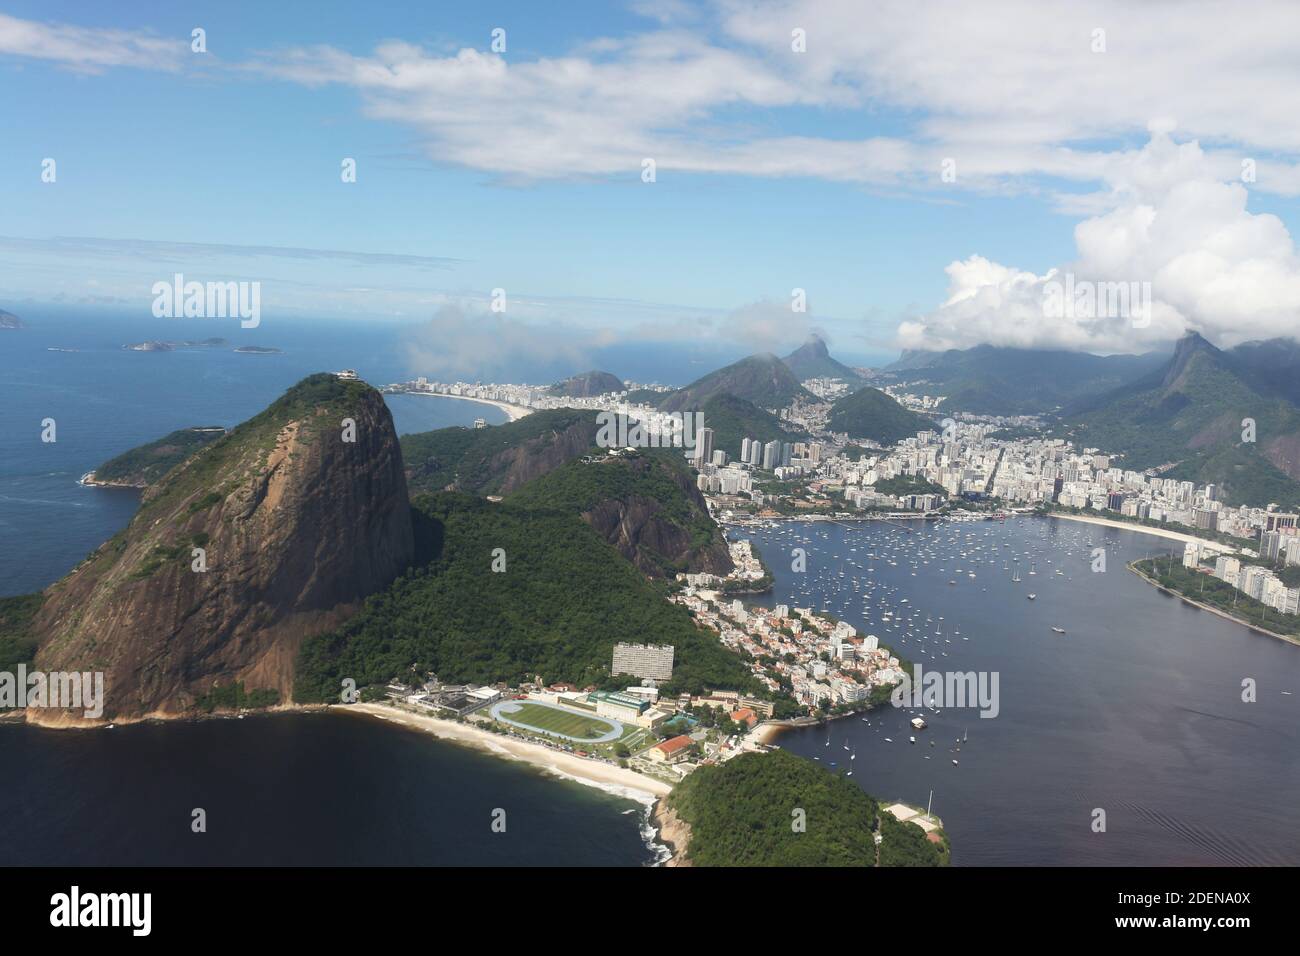 Rio de Janeiro - größtes internationales Reiseziel in Brasilien, Lateinamerika und der gesamten südlichen Hemisphäre. Stockfoto